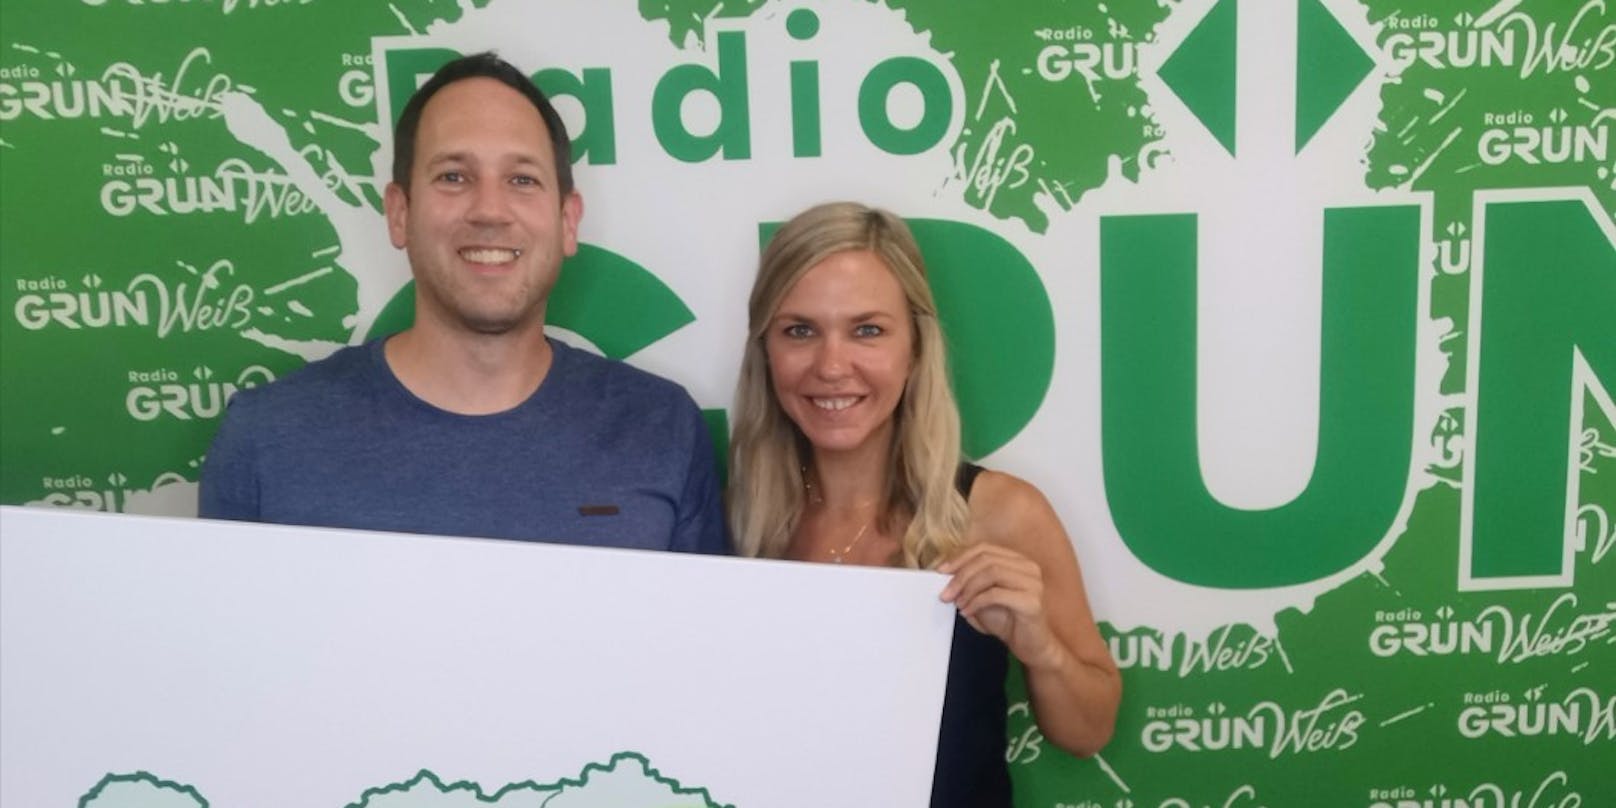 Radio Grün Weiß-Eigentümer Nicole Präpasser und Peter Petzner freuen sich über die massive Sendegebietserweiterung.